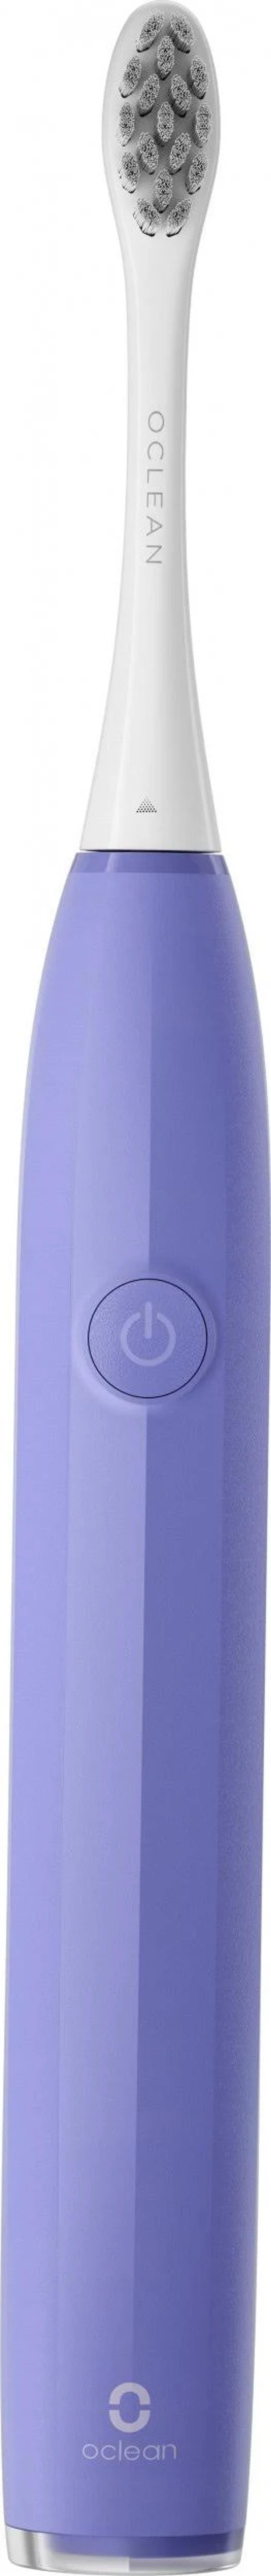 OCLEAN Endurance Violett Purple Elektrische Zahnbürste